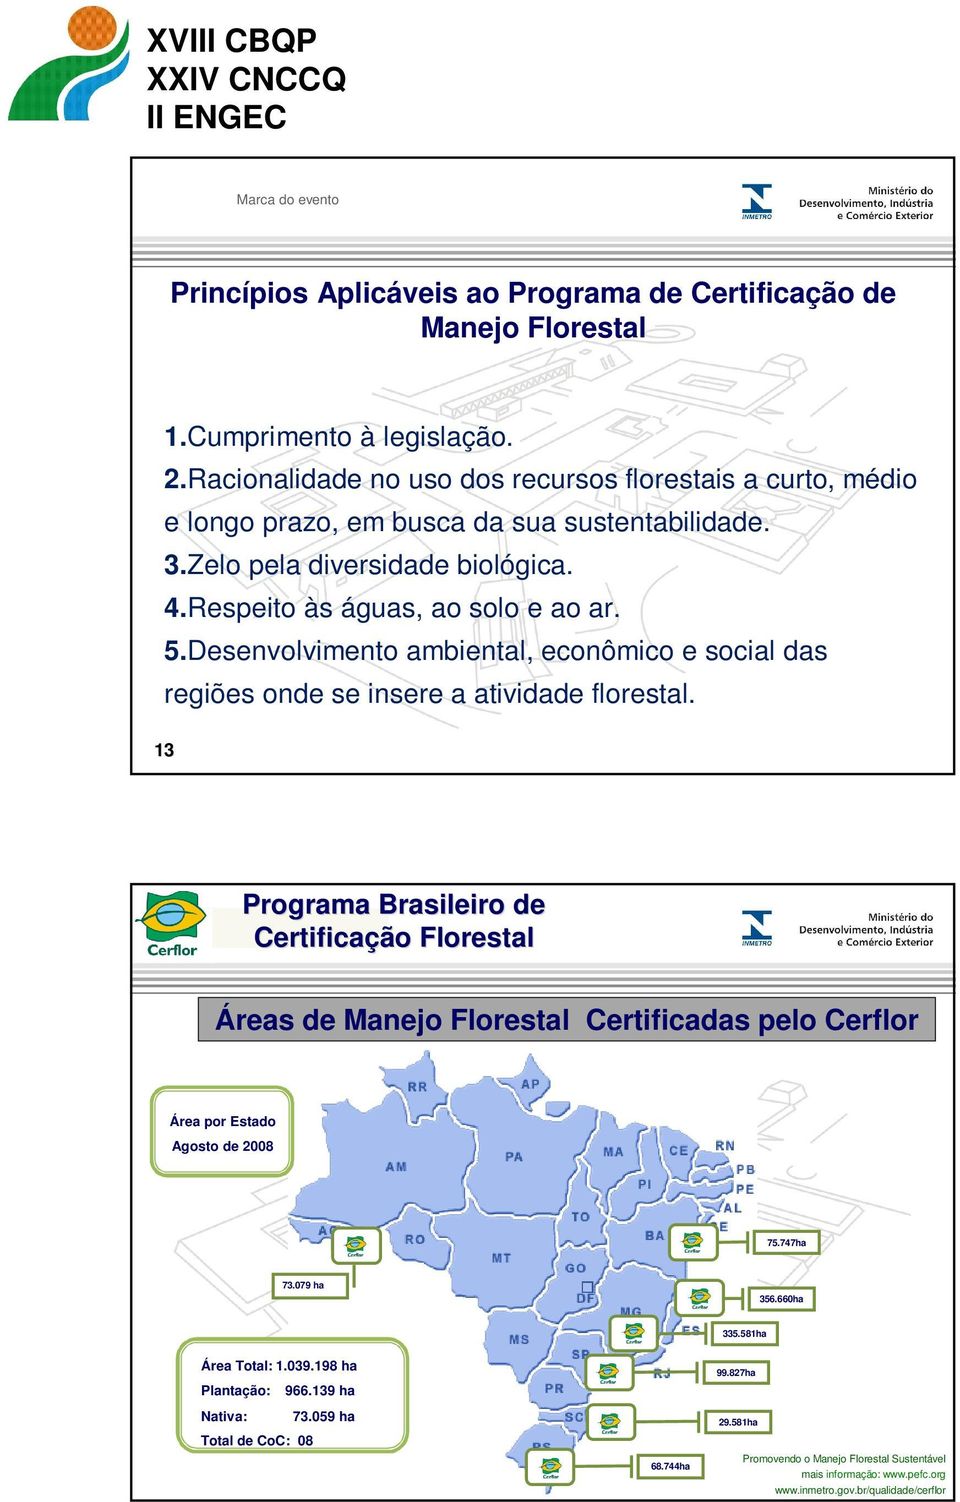 Desenvolvimento ambiental, econômico e social das regiões onde se insere a atividade florestal.